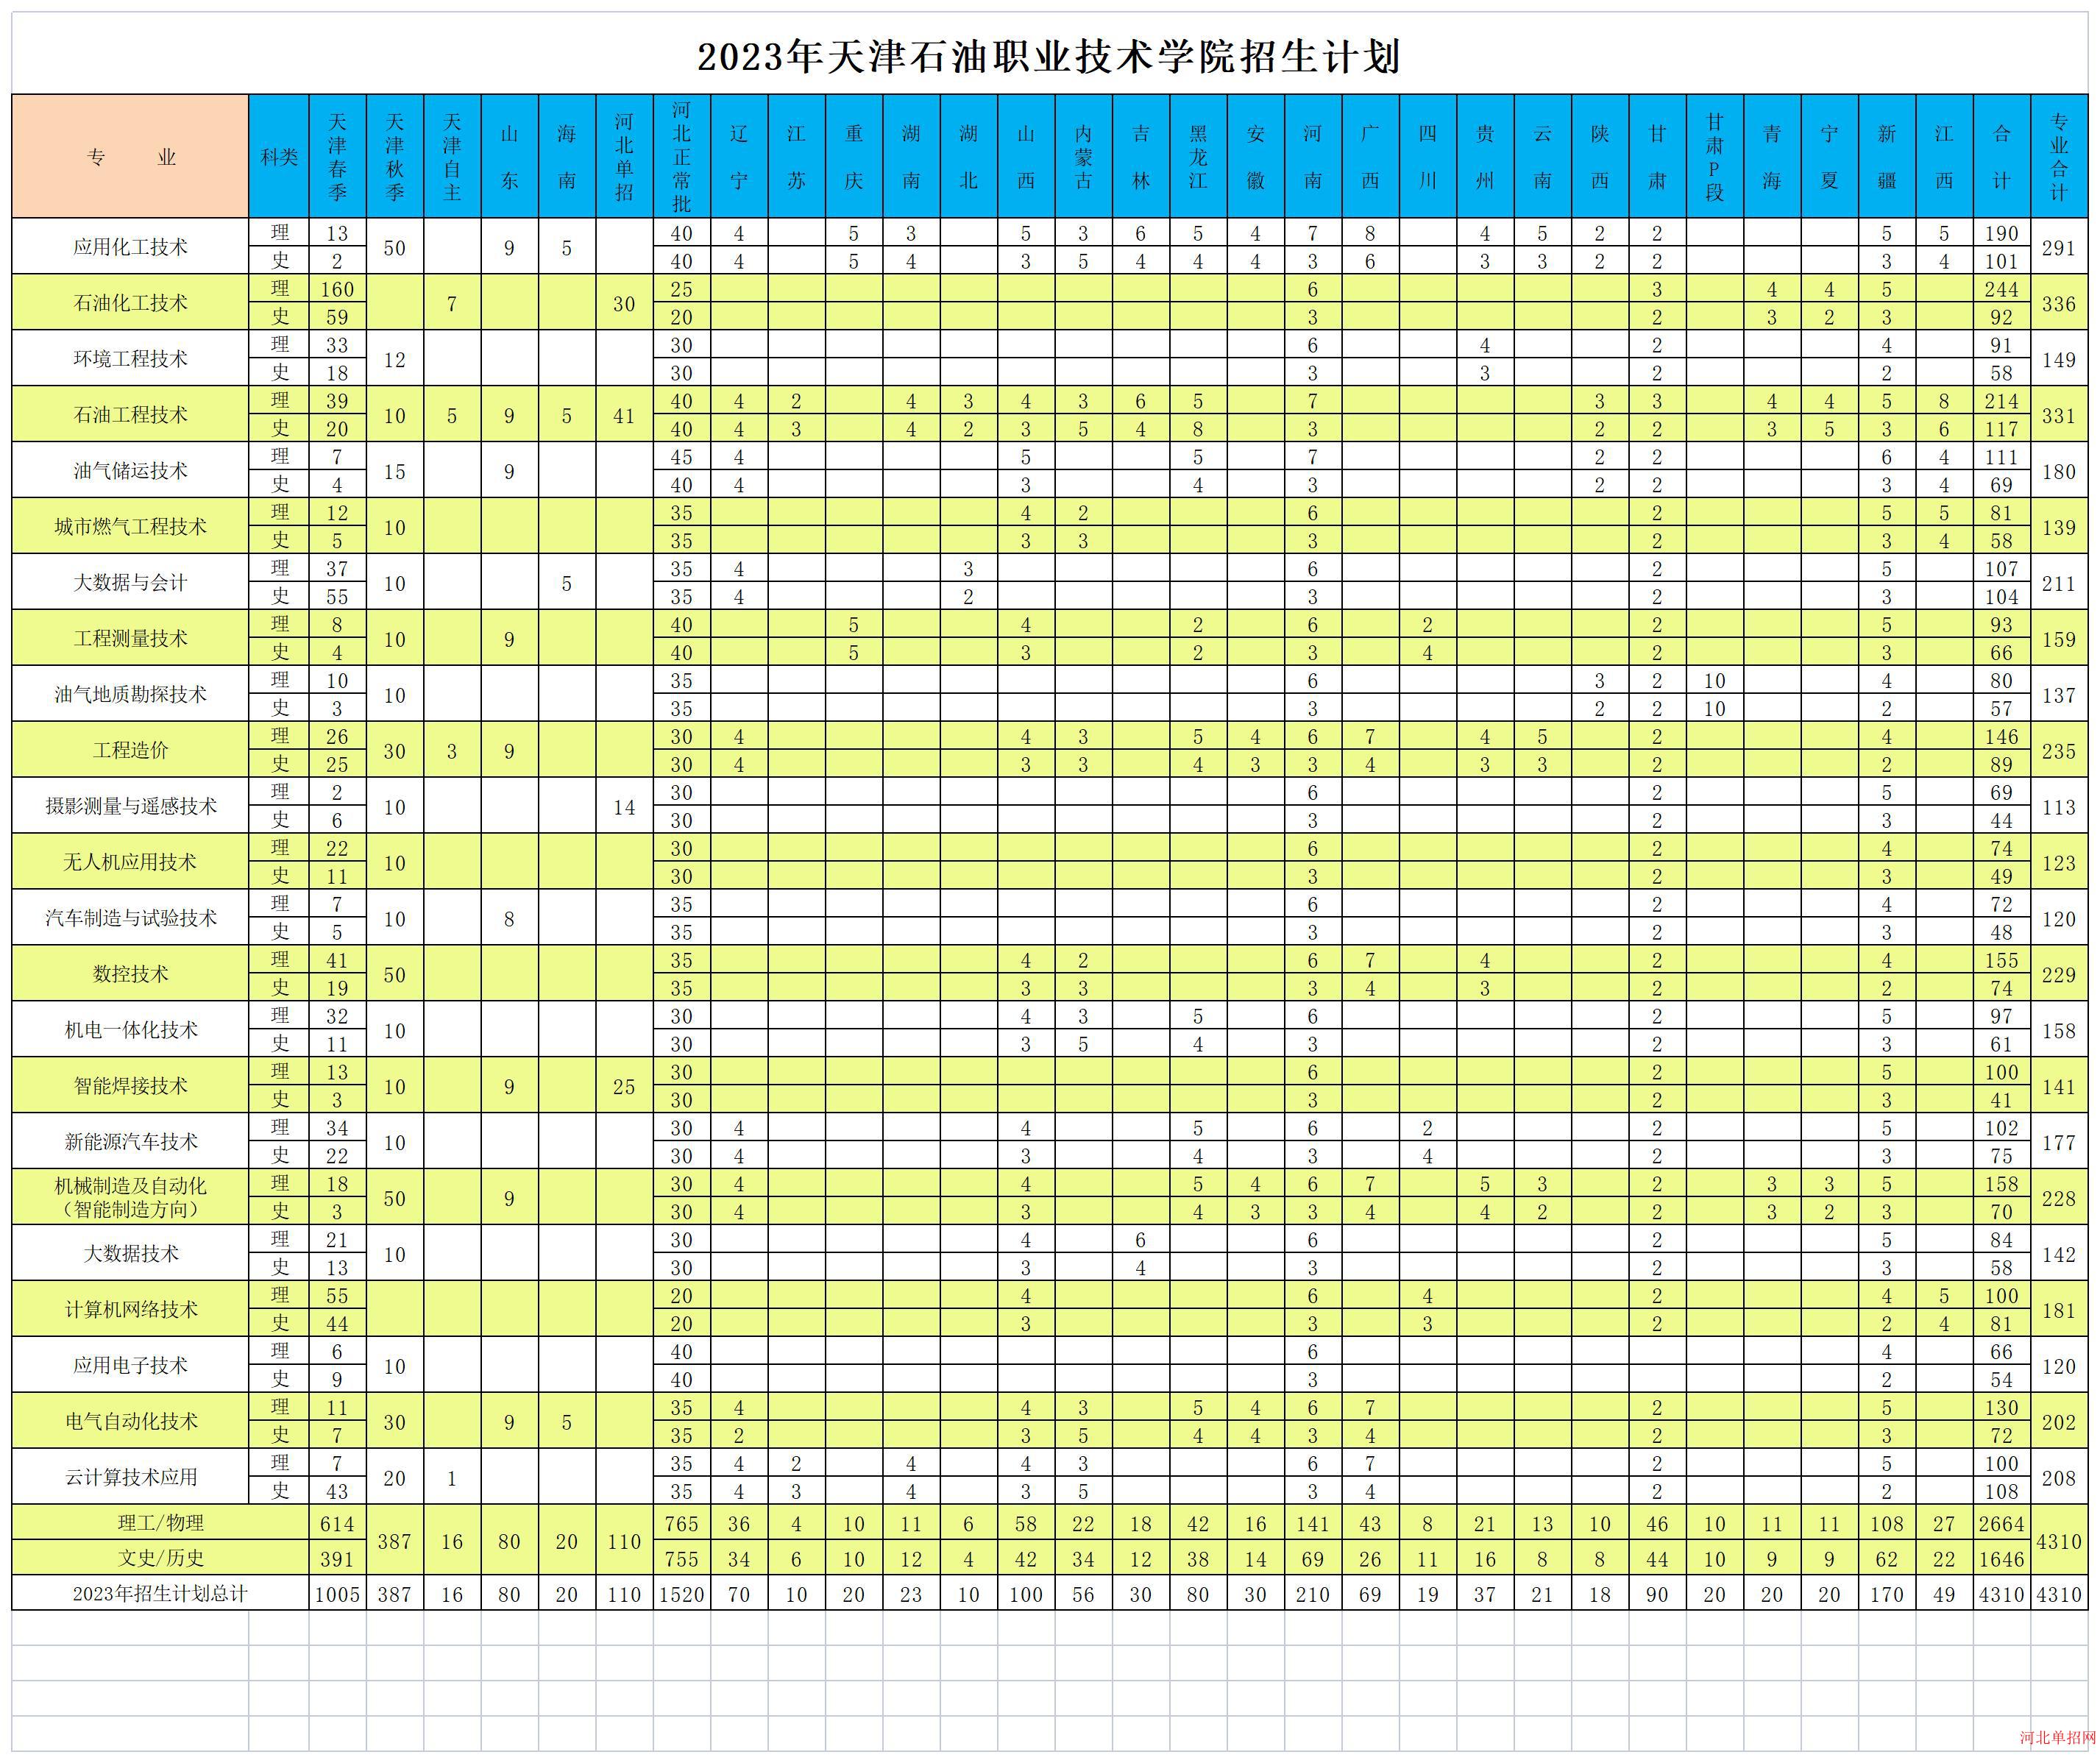 2023年天津石油职业技术学院高职单招录取人数 图1